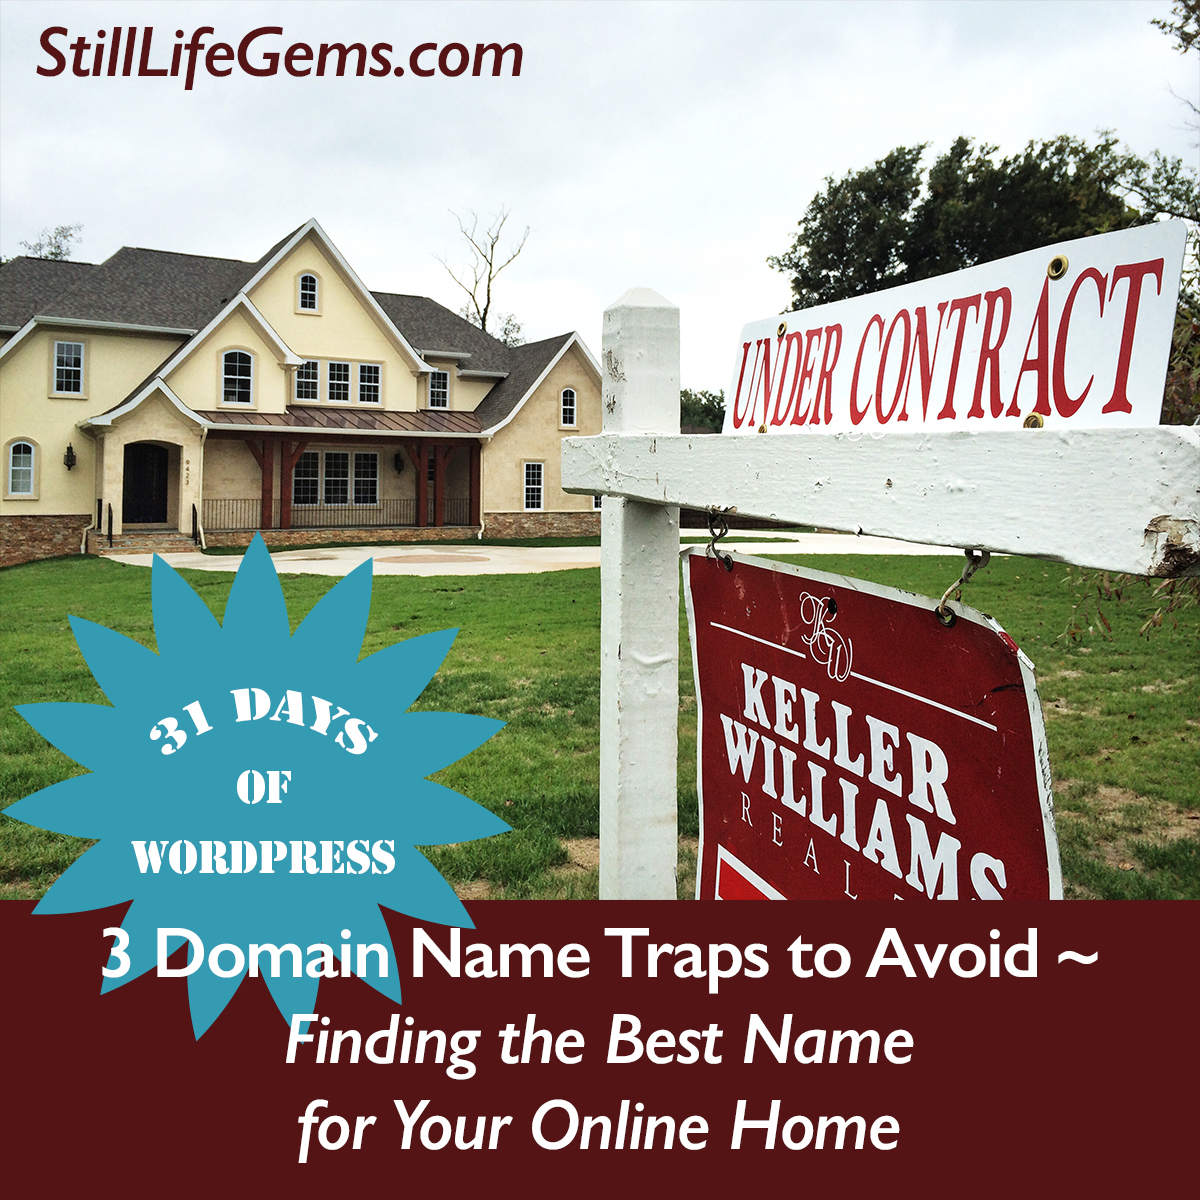 3 Domain Name Traps to Avoid